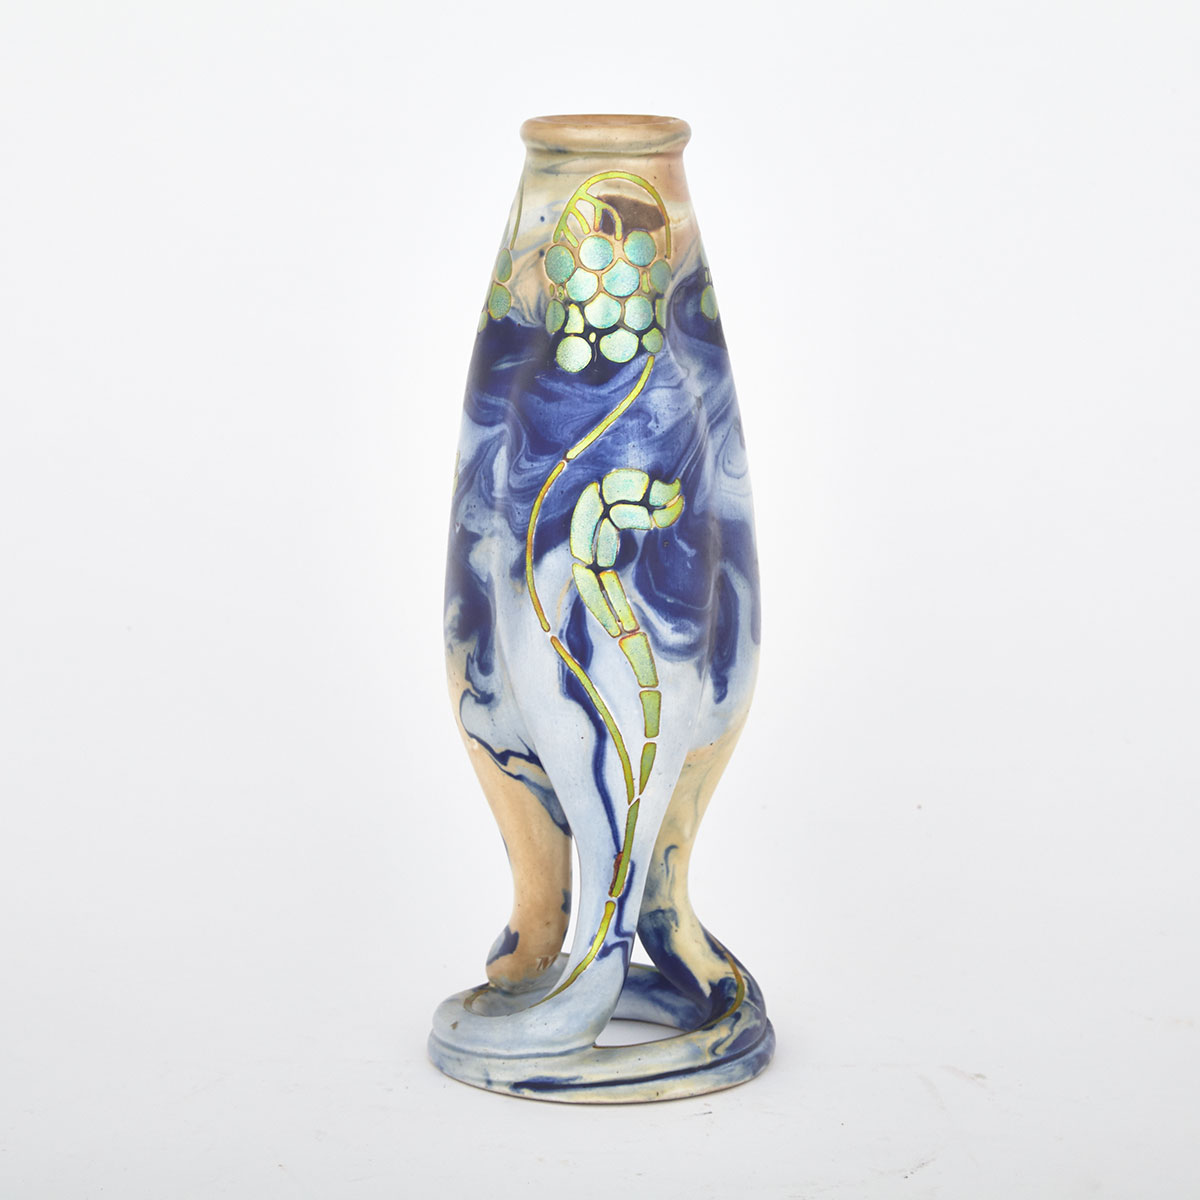 Zsolnay Organic Form Vase, c.1900